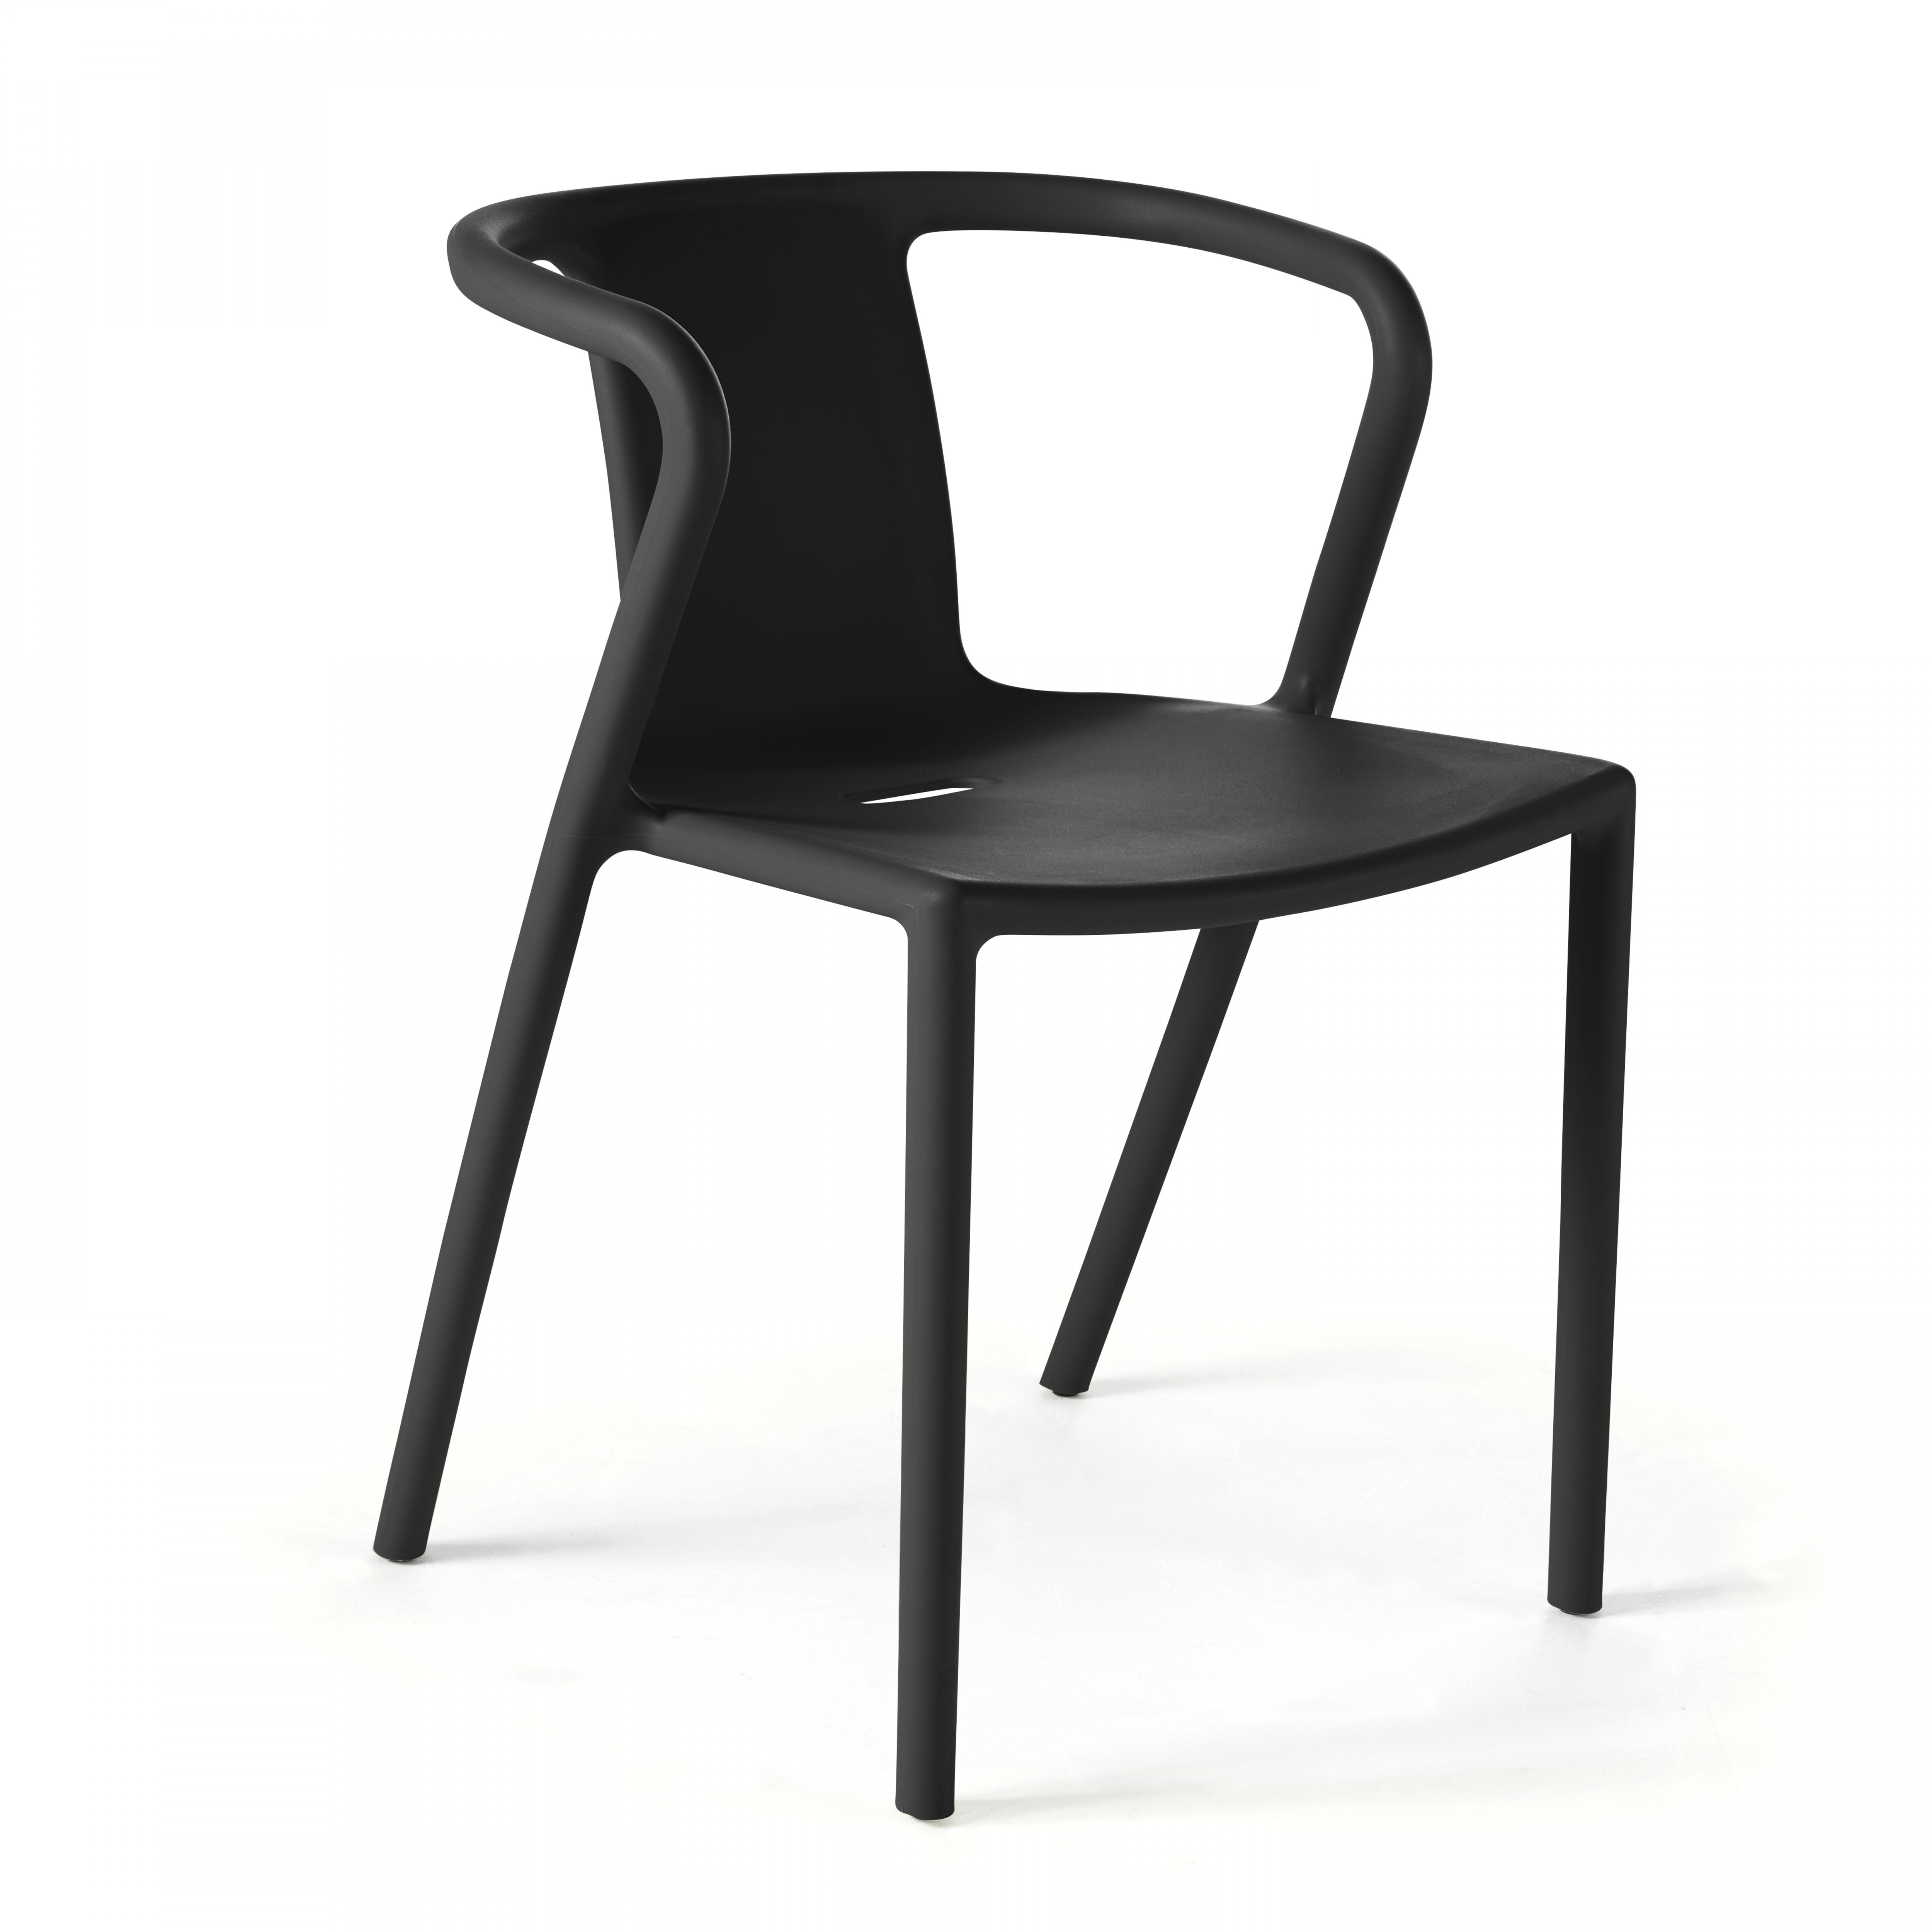 Chaise en plastique avec accoudoirs design